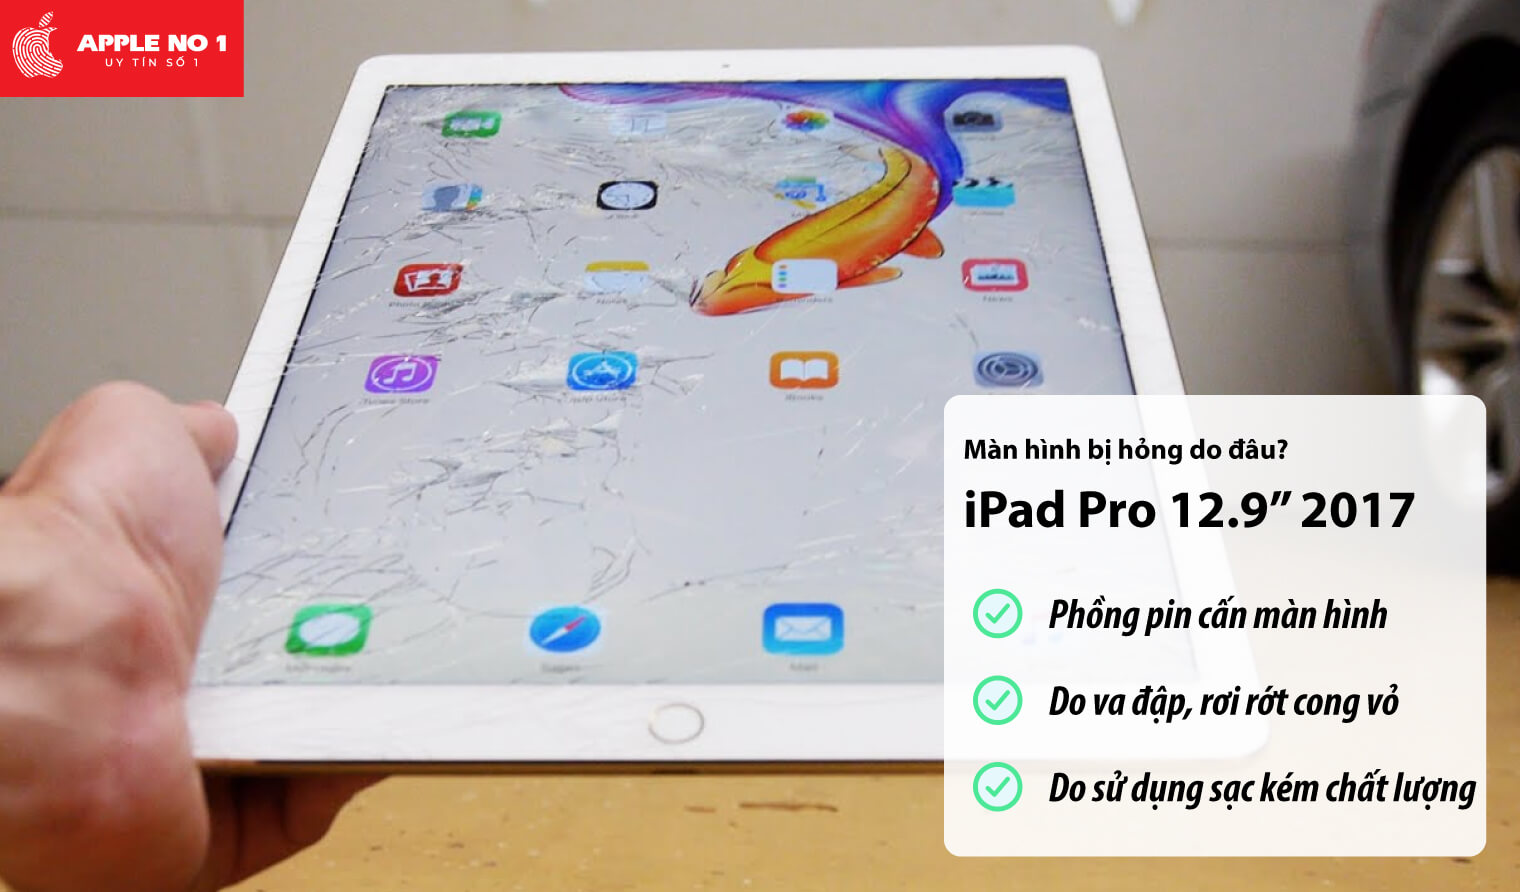 Màn hình iPad Pro 12.9 inch 2017 bị hỏng do đâu?